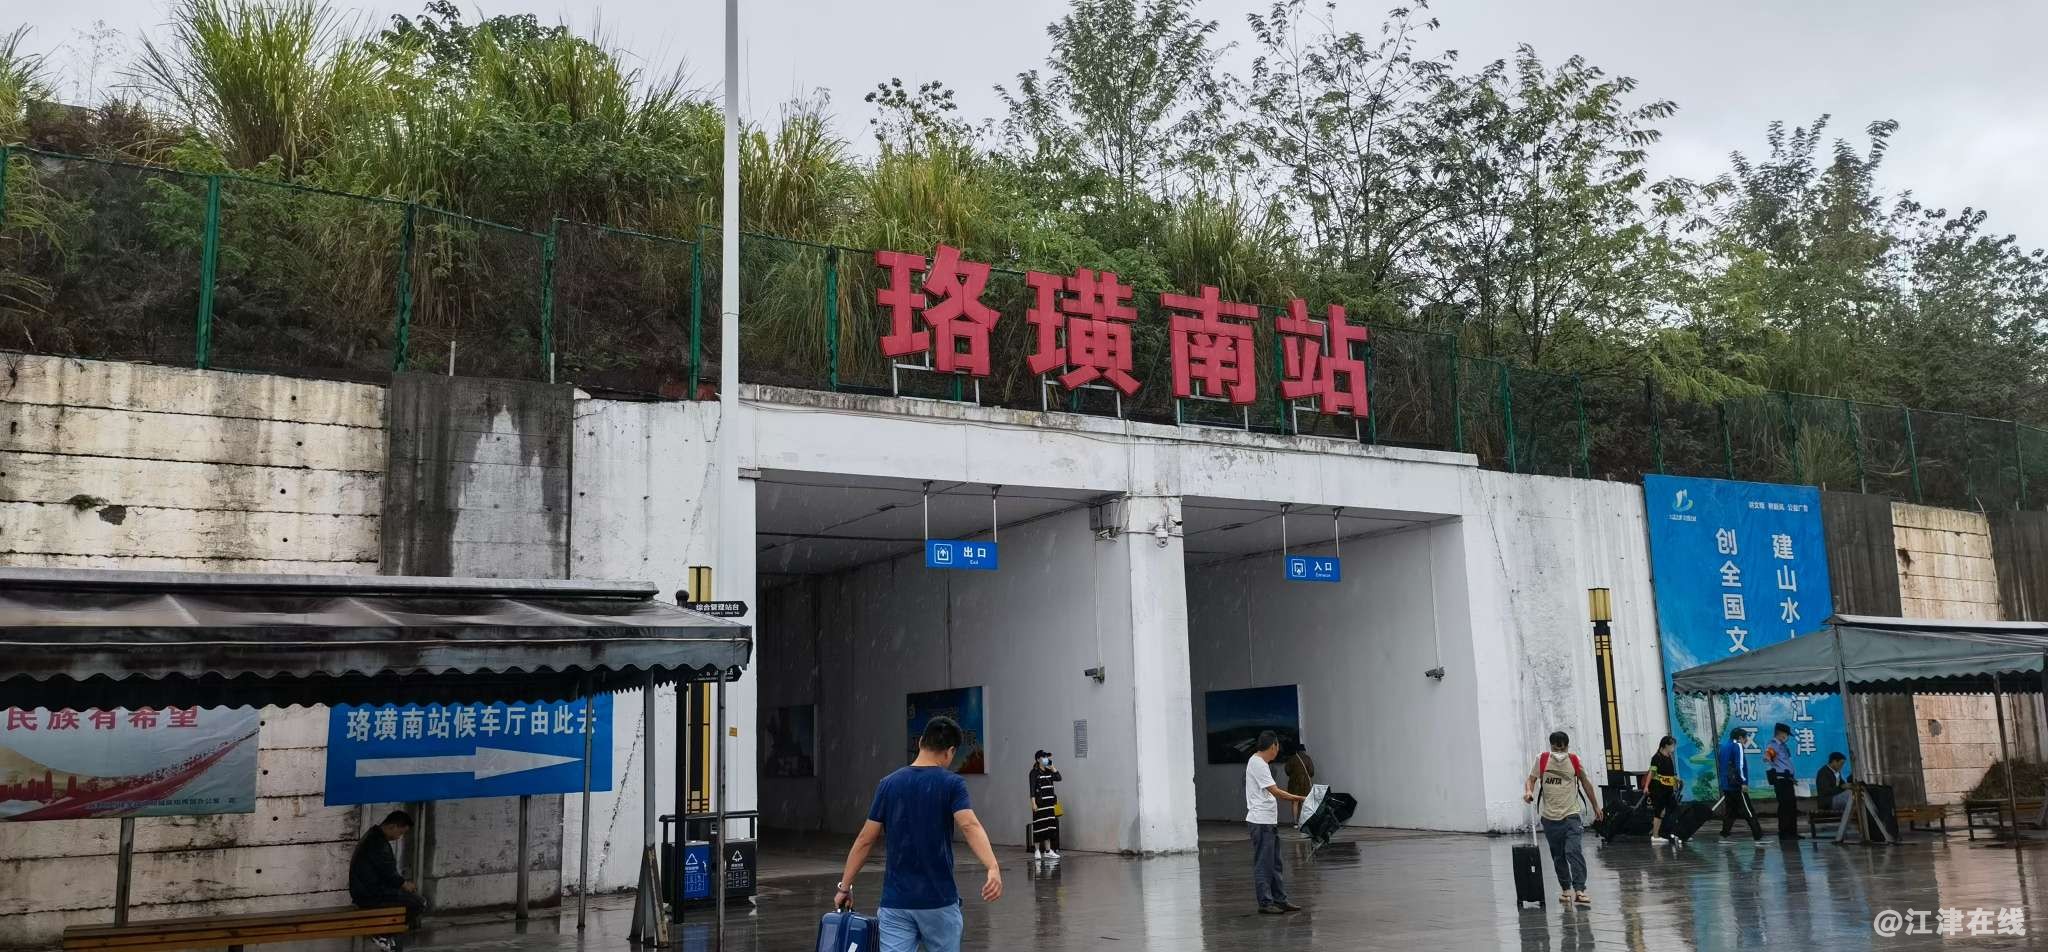 重庆珞璜港专用铁路正式开通 助力重庆多式联运体系建设 - 中国船东协会